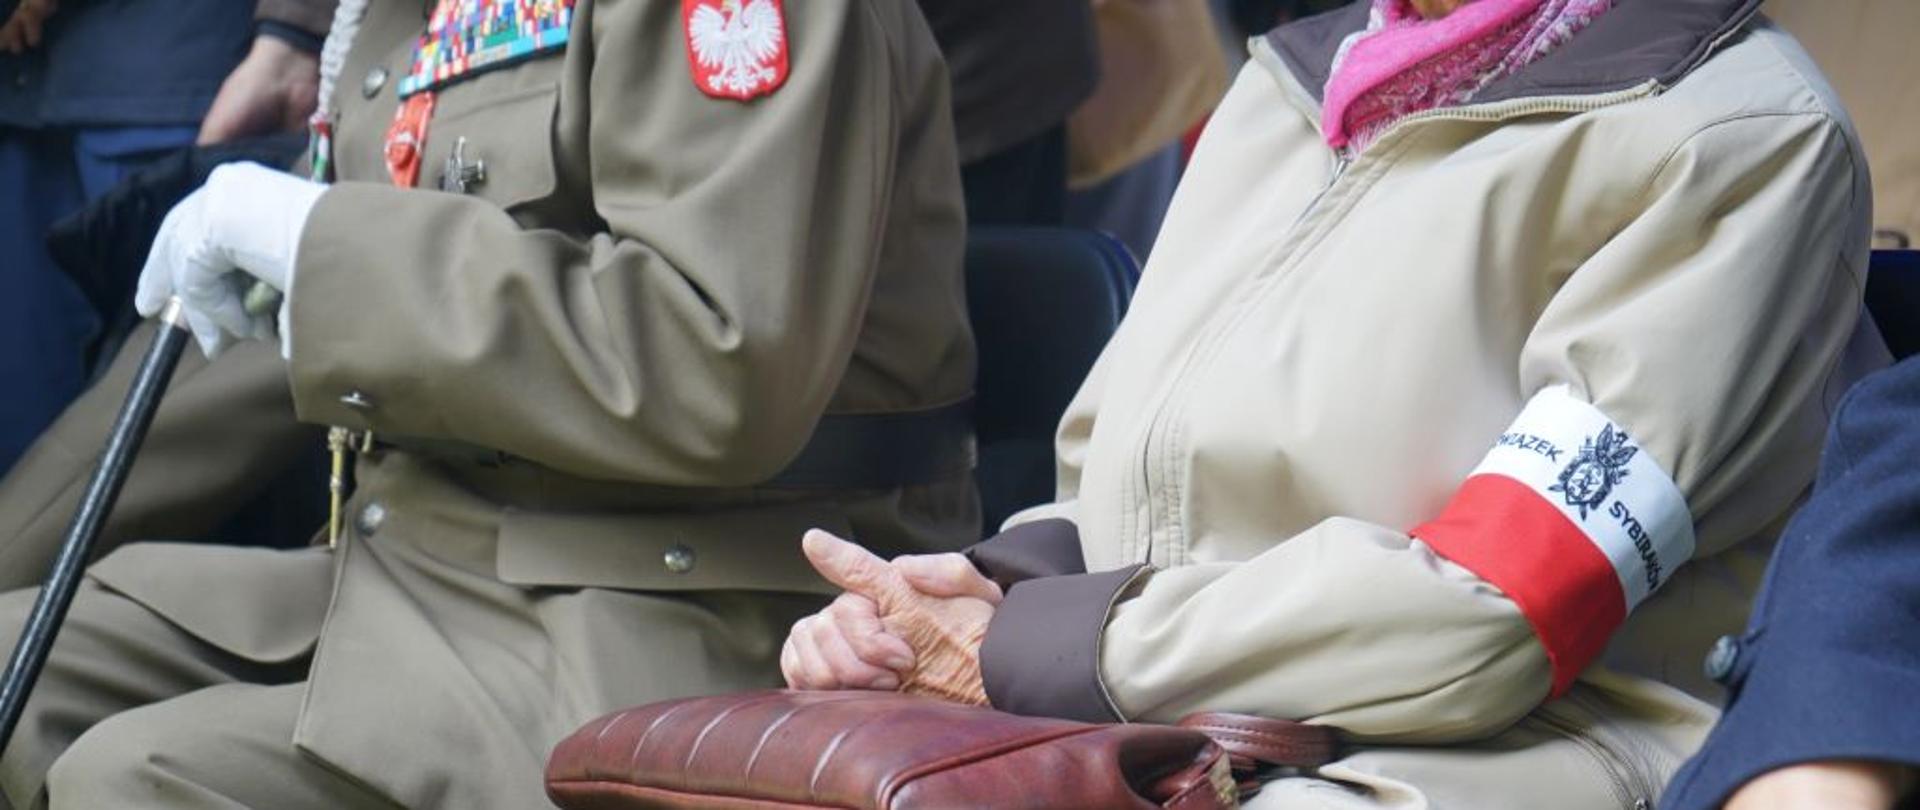 osoby siedzące na krzesłach, nie widać twarzy, widoczna opaska biało czerwona założona na rękaw kurtki, oraz zielony mundur z medalami